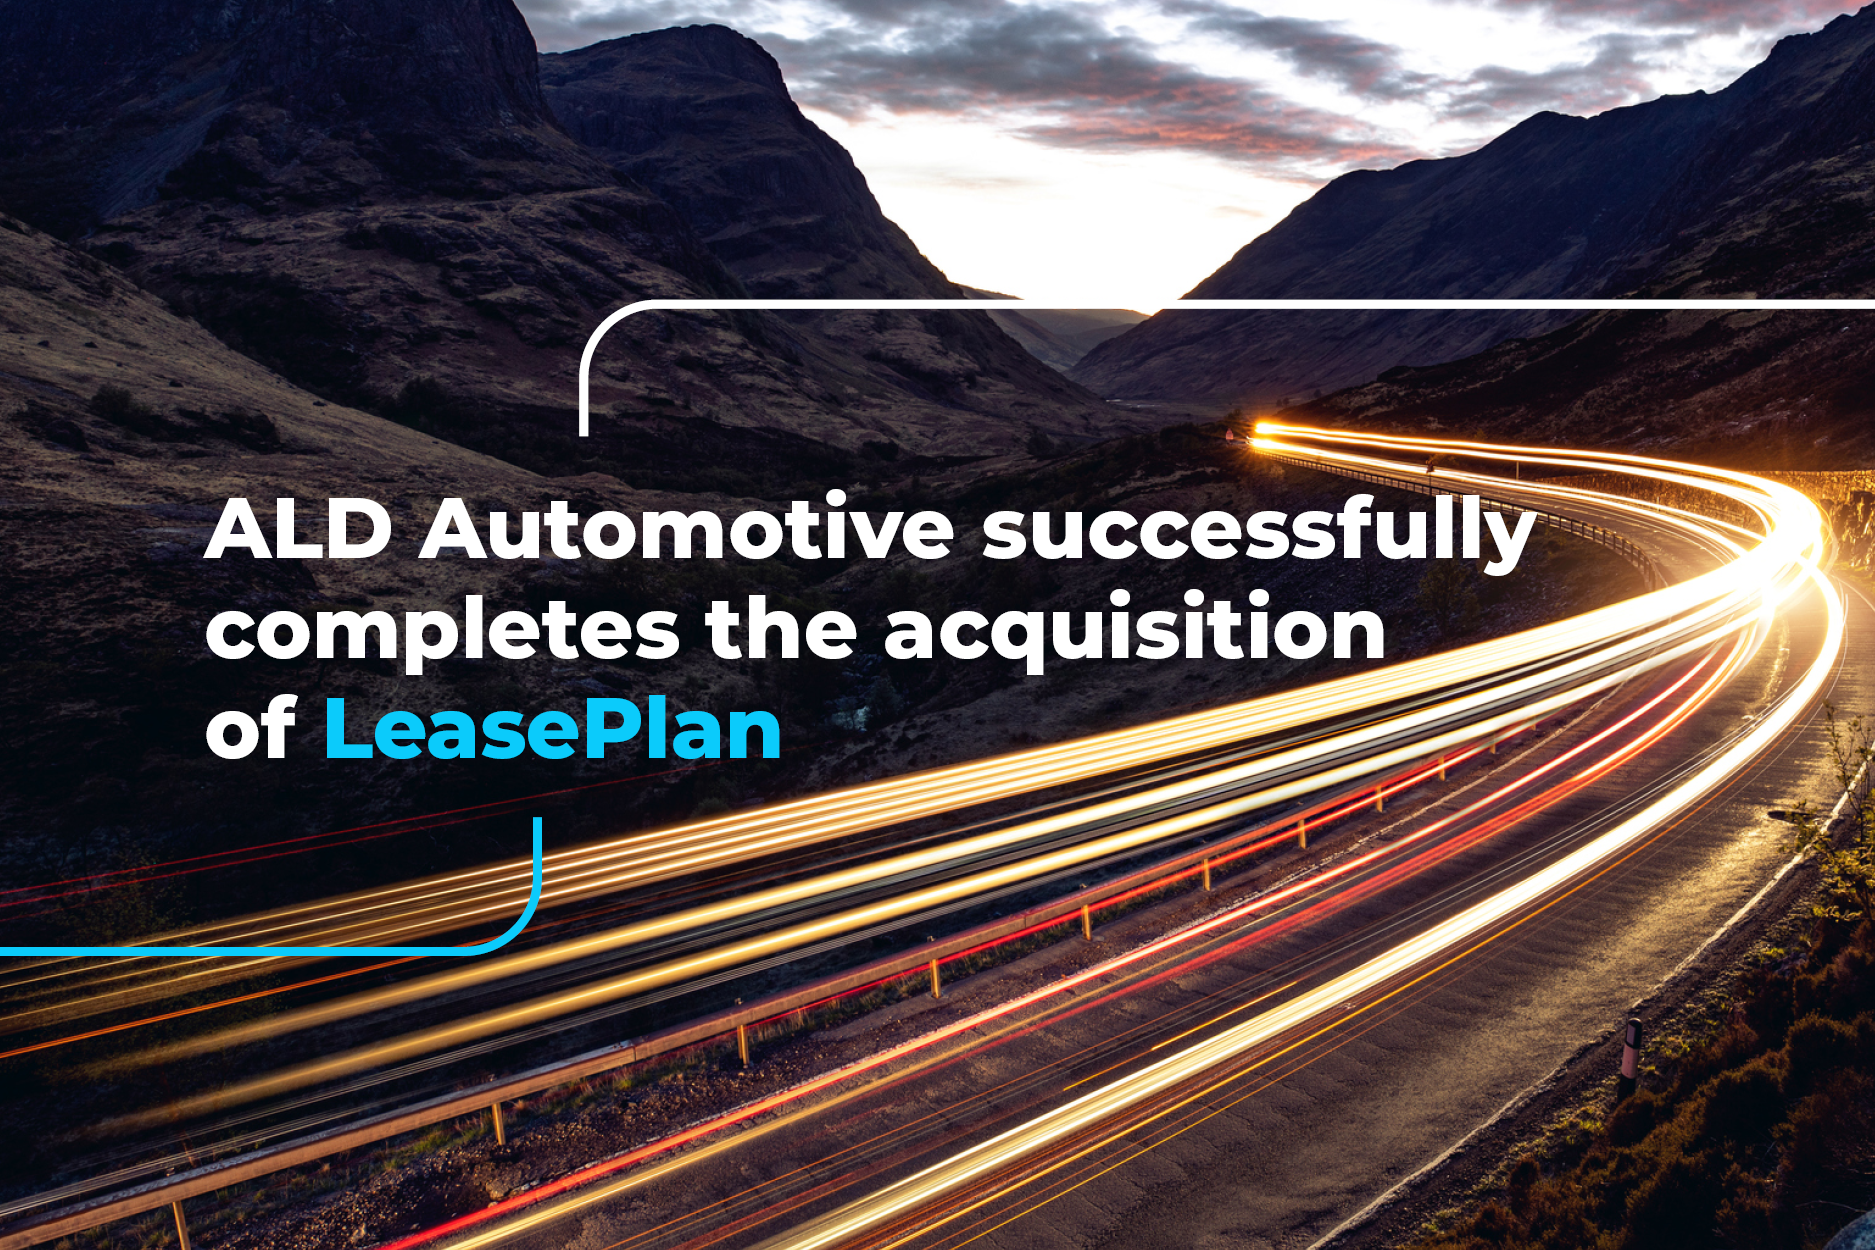 ALD Automotive je uspešno završio akviziciju  LeasePlan-a i najavljuje imenovanje lokalnog menadžmenta